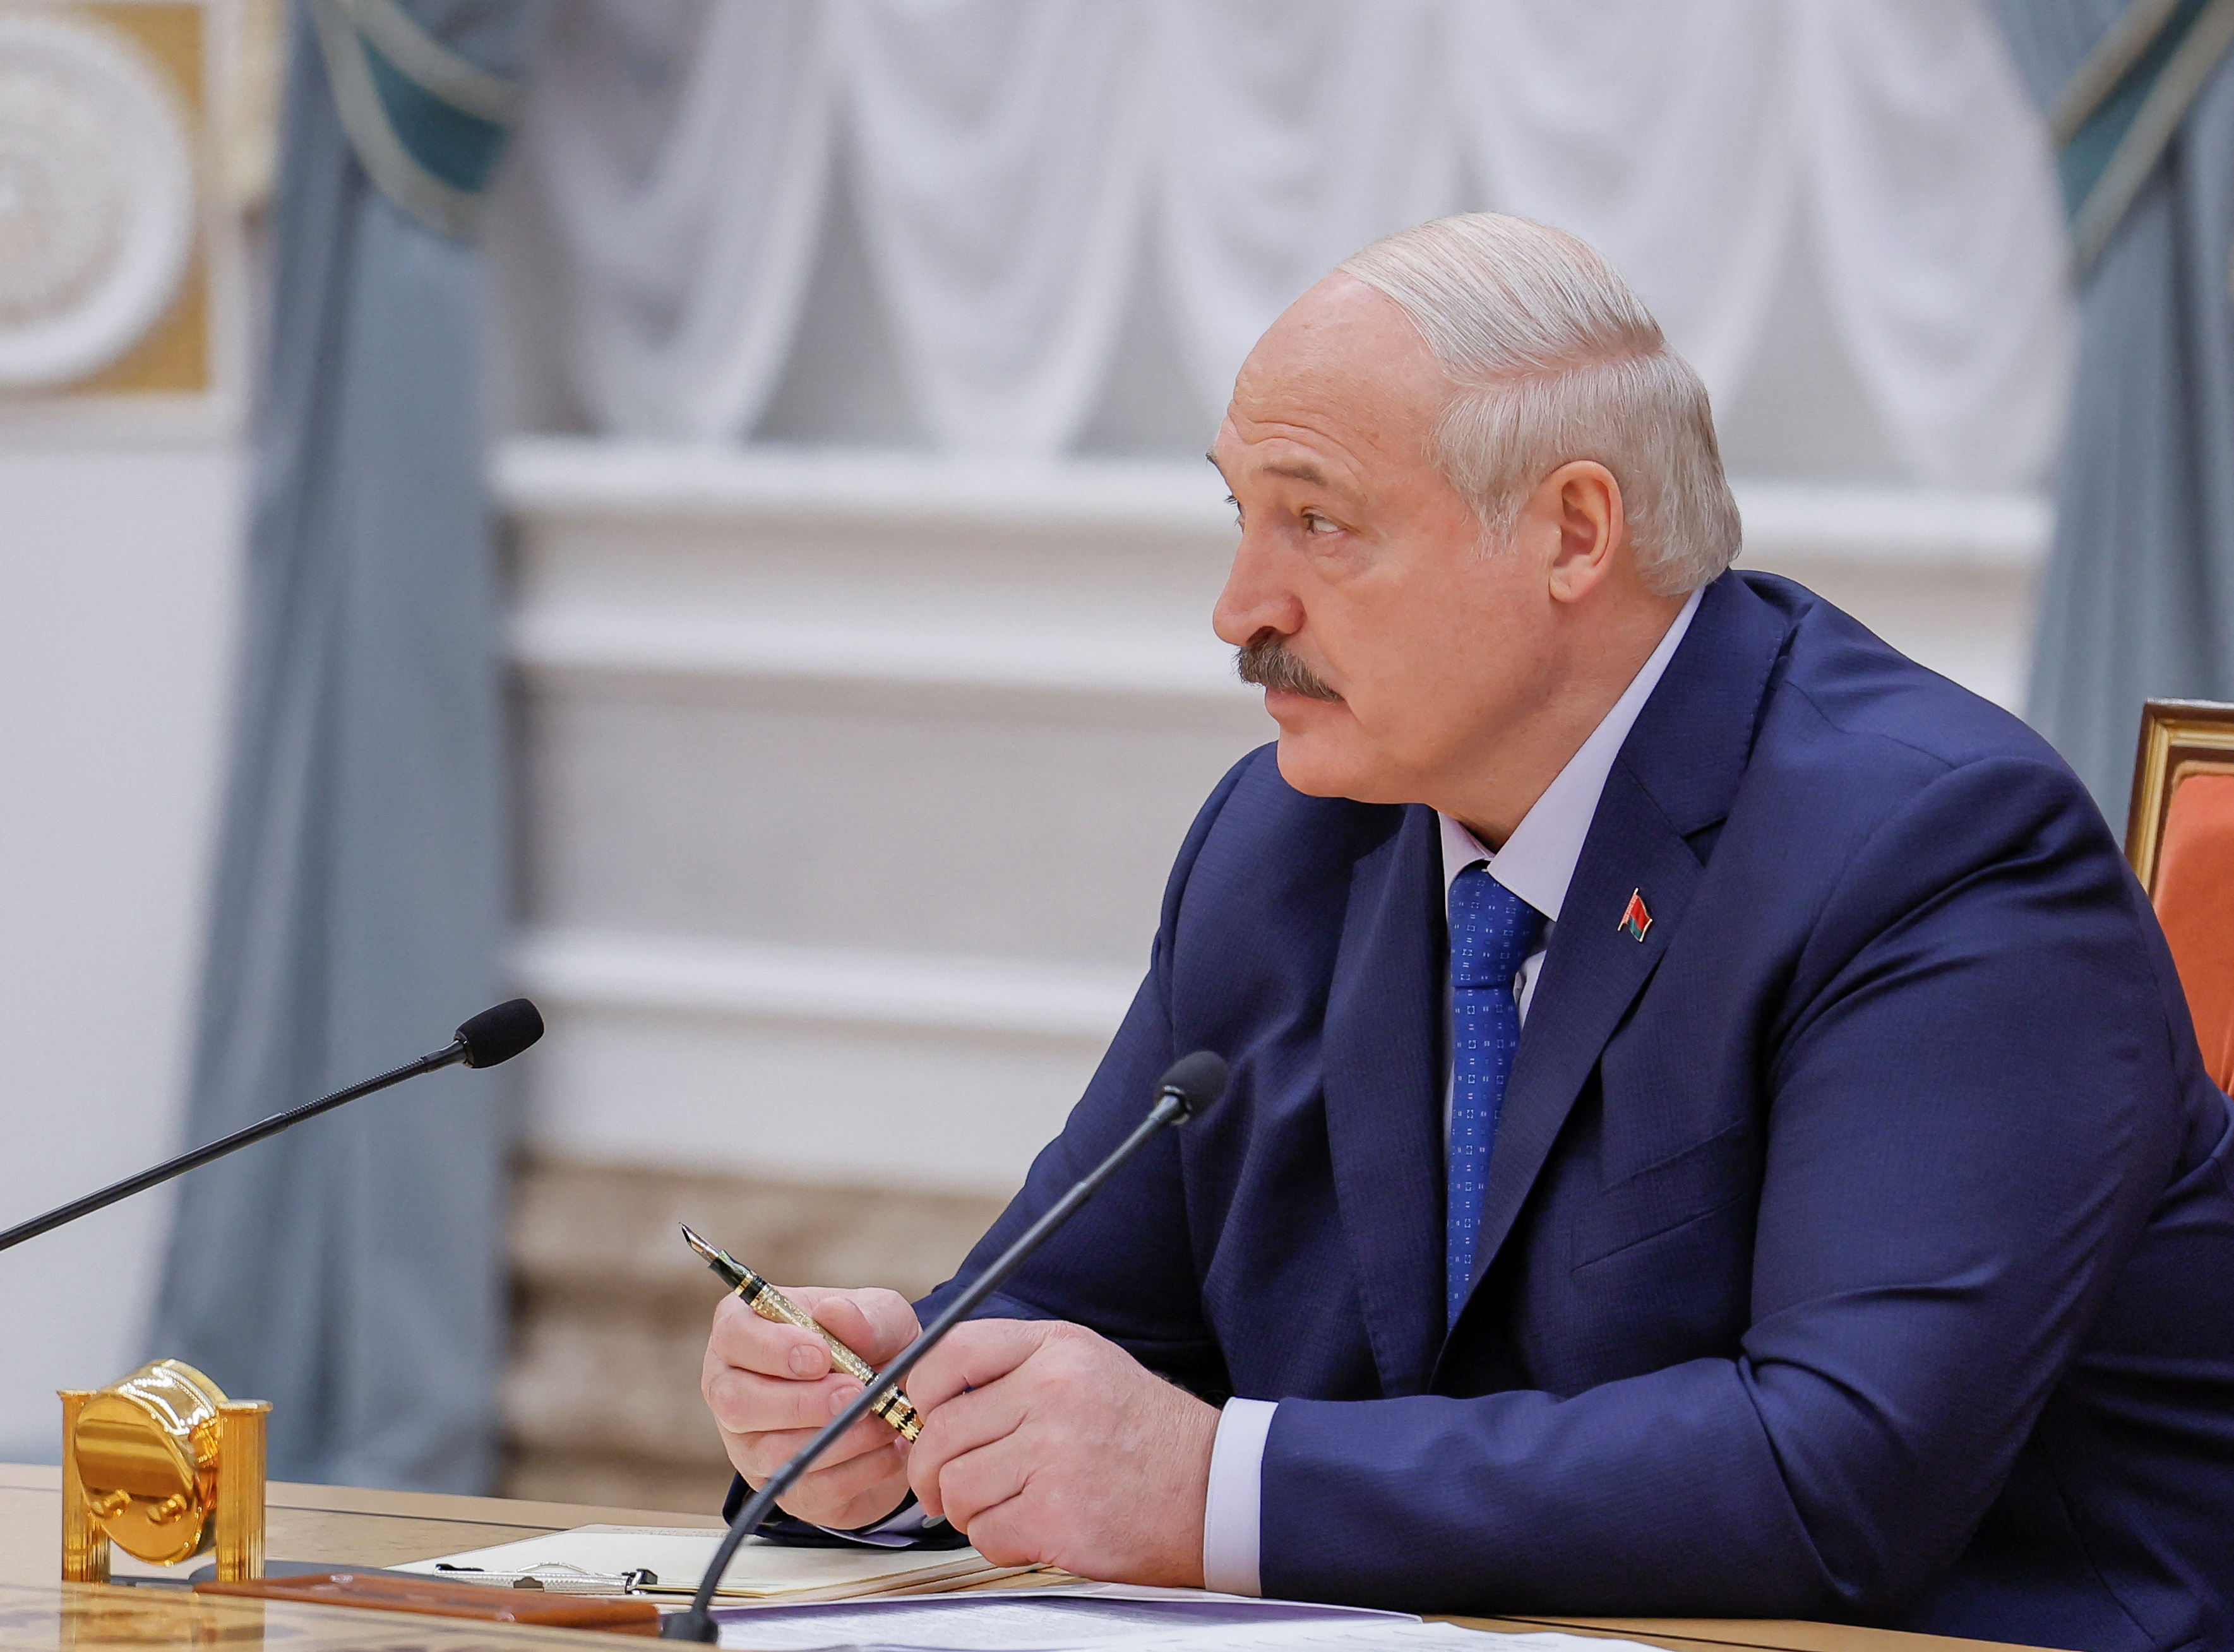 Belarusian President Alexander Lukashenko attends a press conference in Minsk